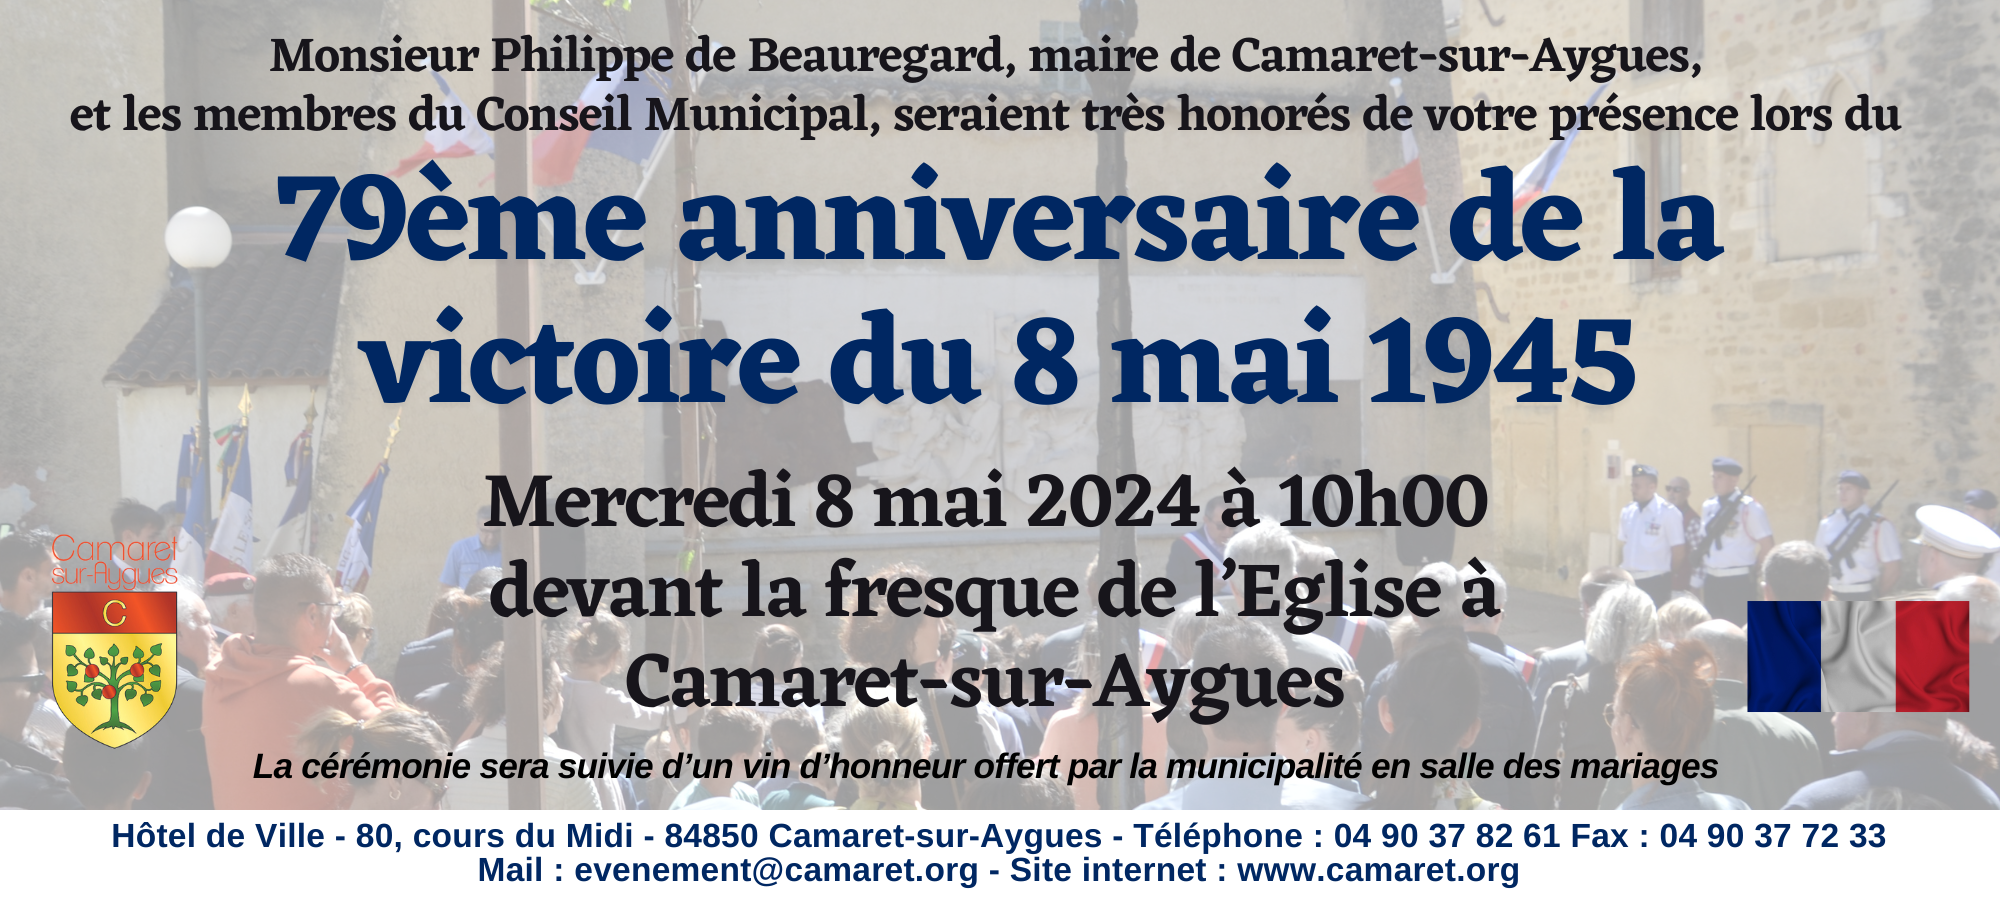 Cérémonie du 79ème anniversaire de la victoire du 8 mai 1945 devant la fresque de l'Église à Camaret-sur-Aygues ce mercredi 8 mai 2024 à 10h00